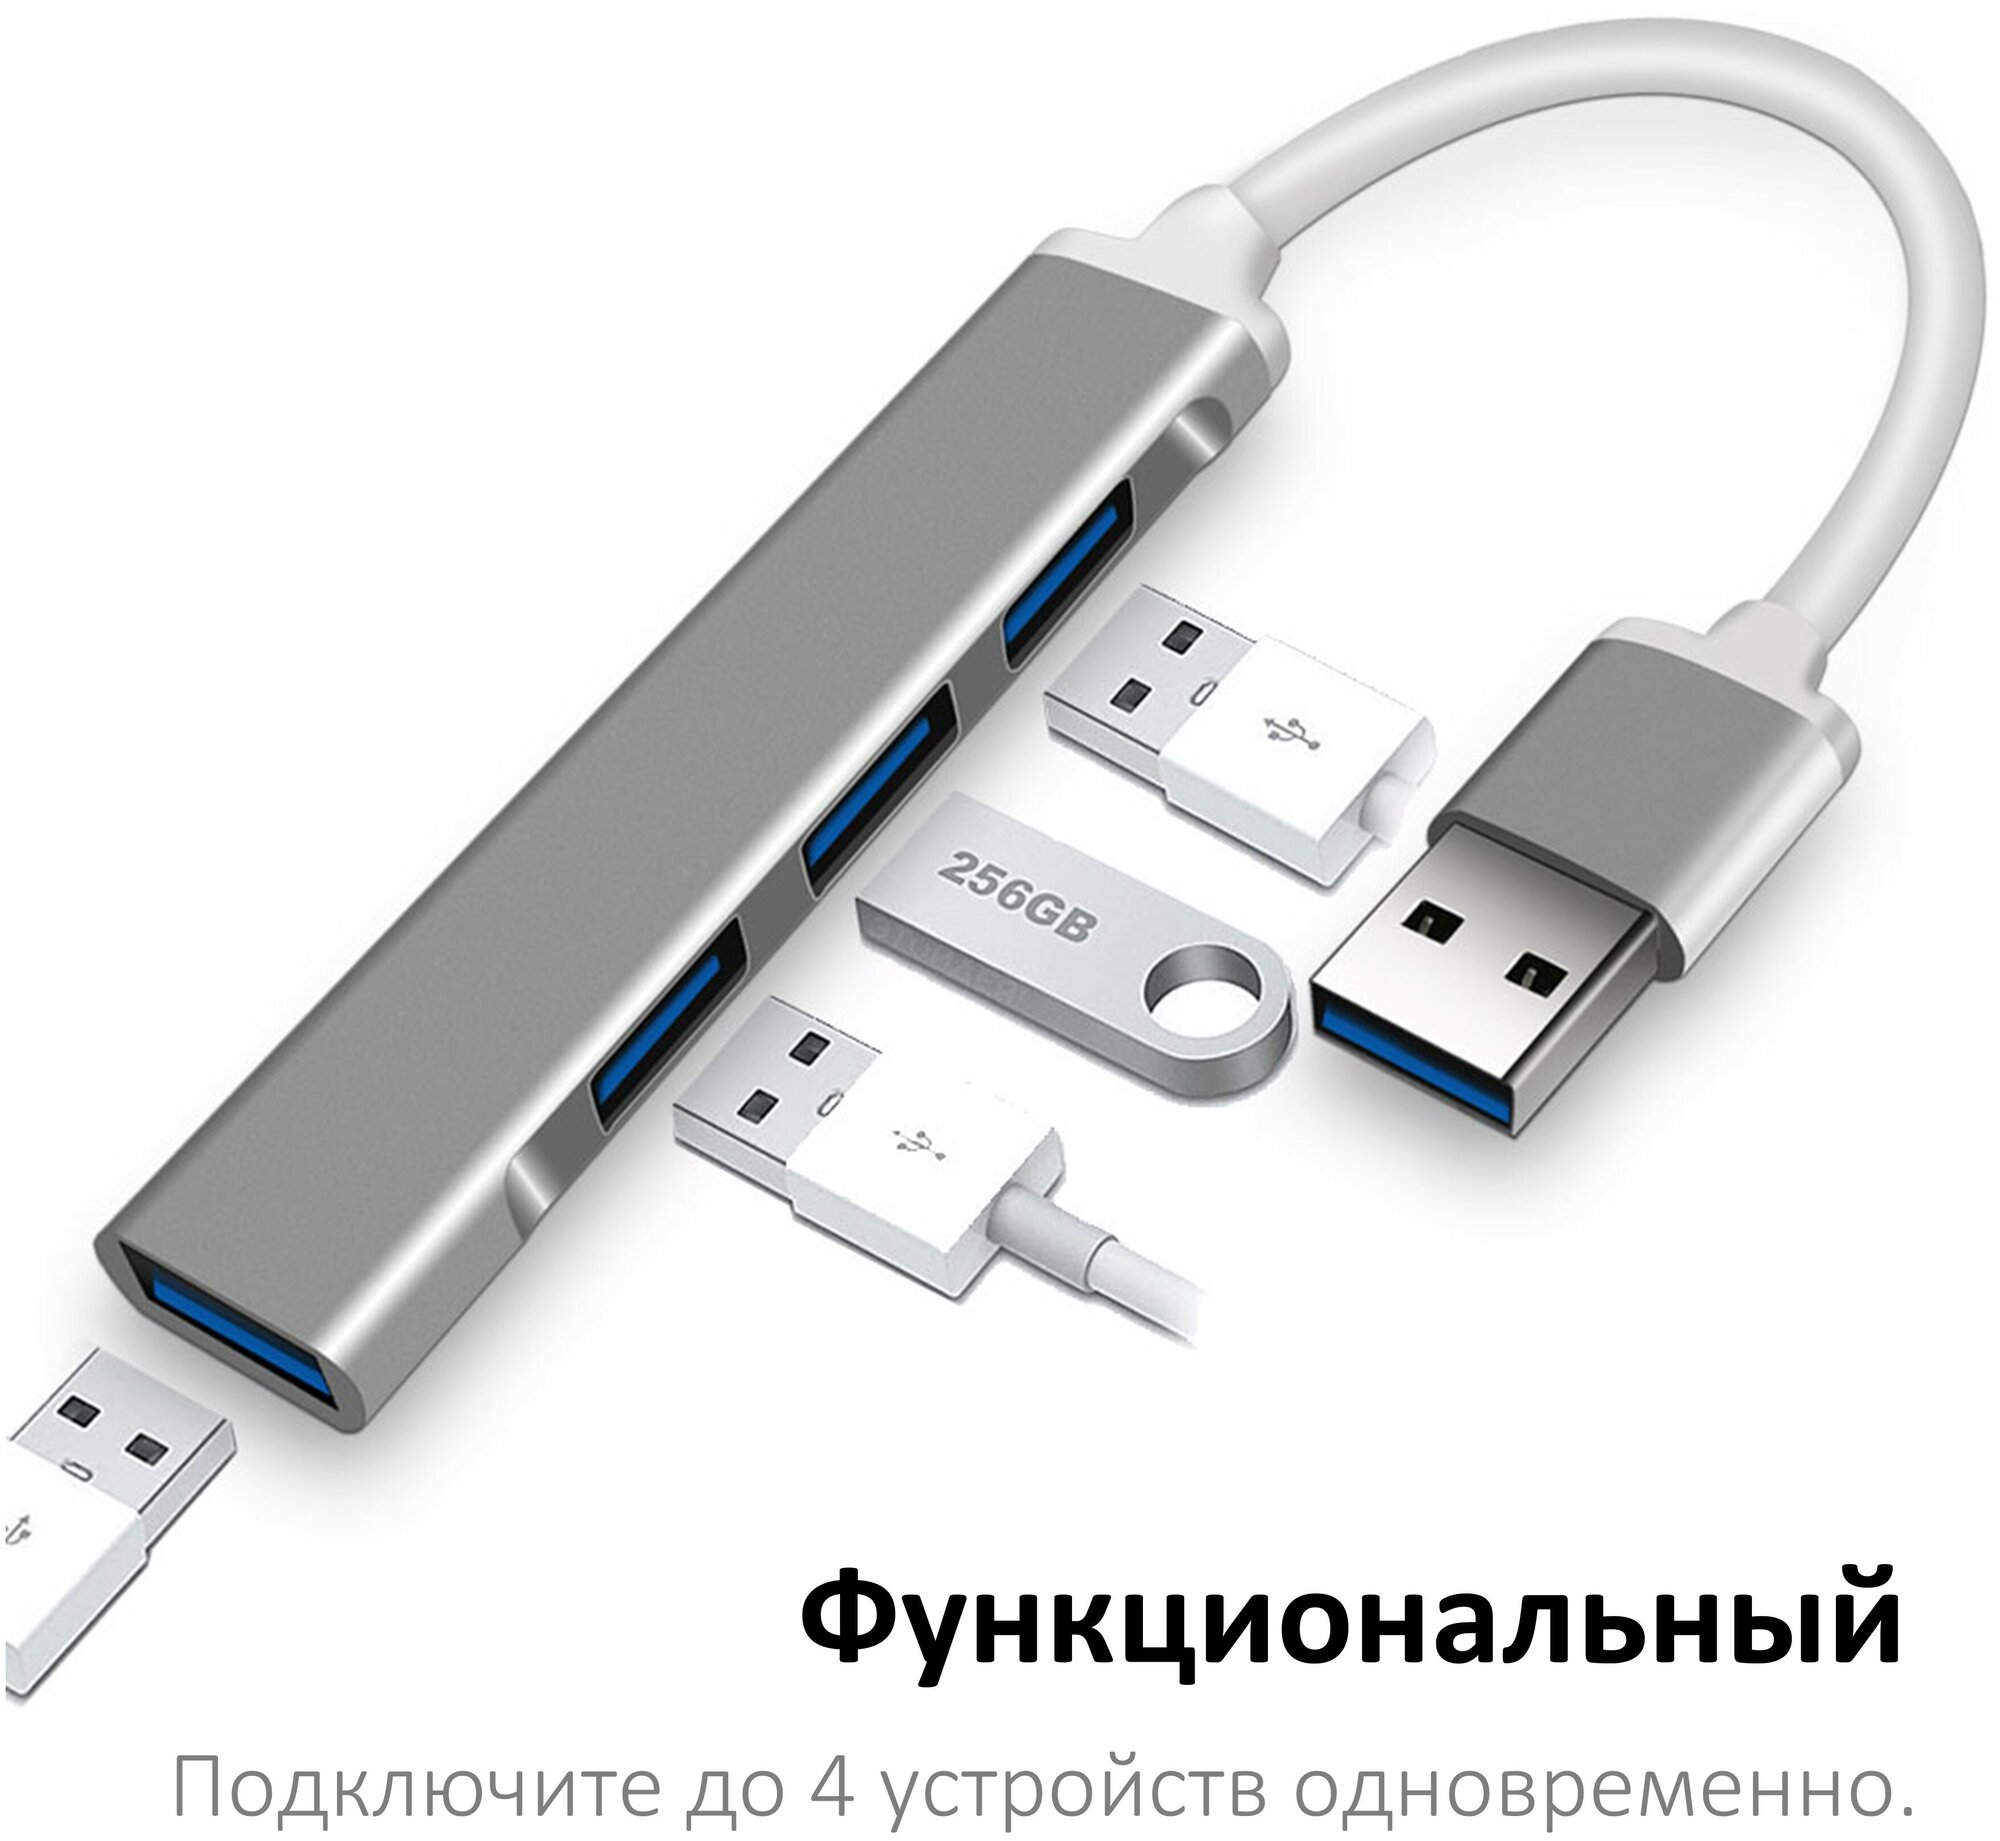 Мини USB хаб NOBUS на 4 порта (USB 3.0 и 2.0), темно-серый / переходник USB-A для ноутбука